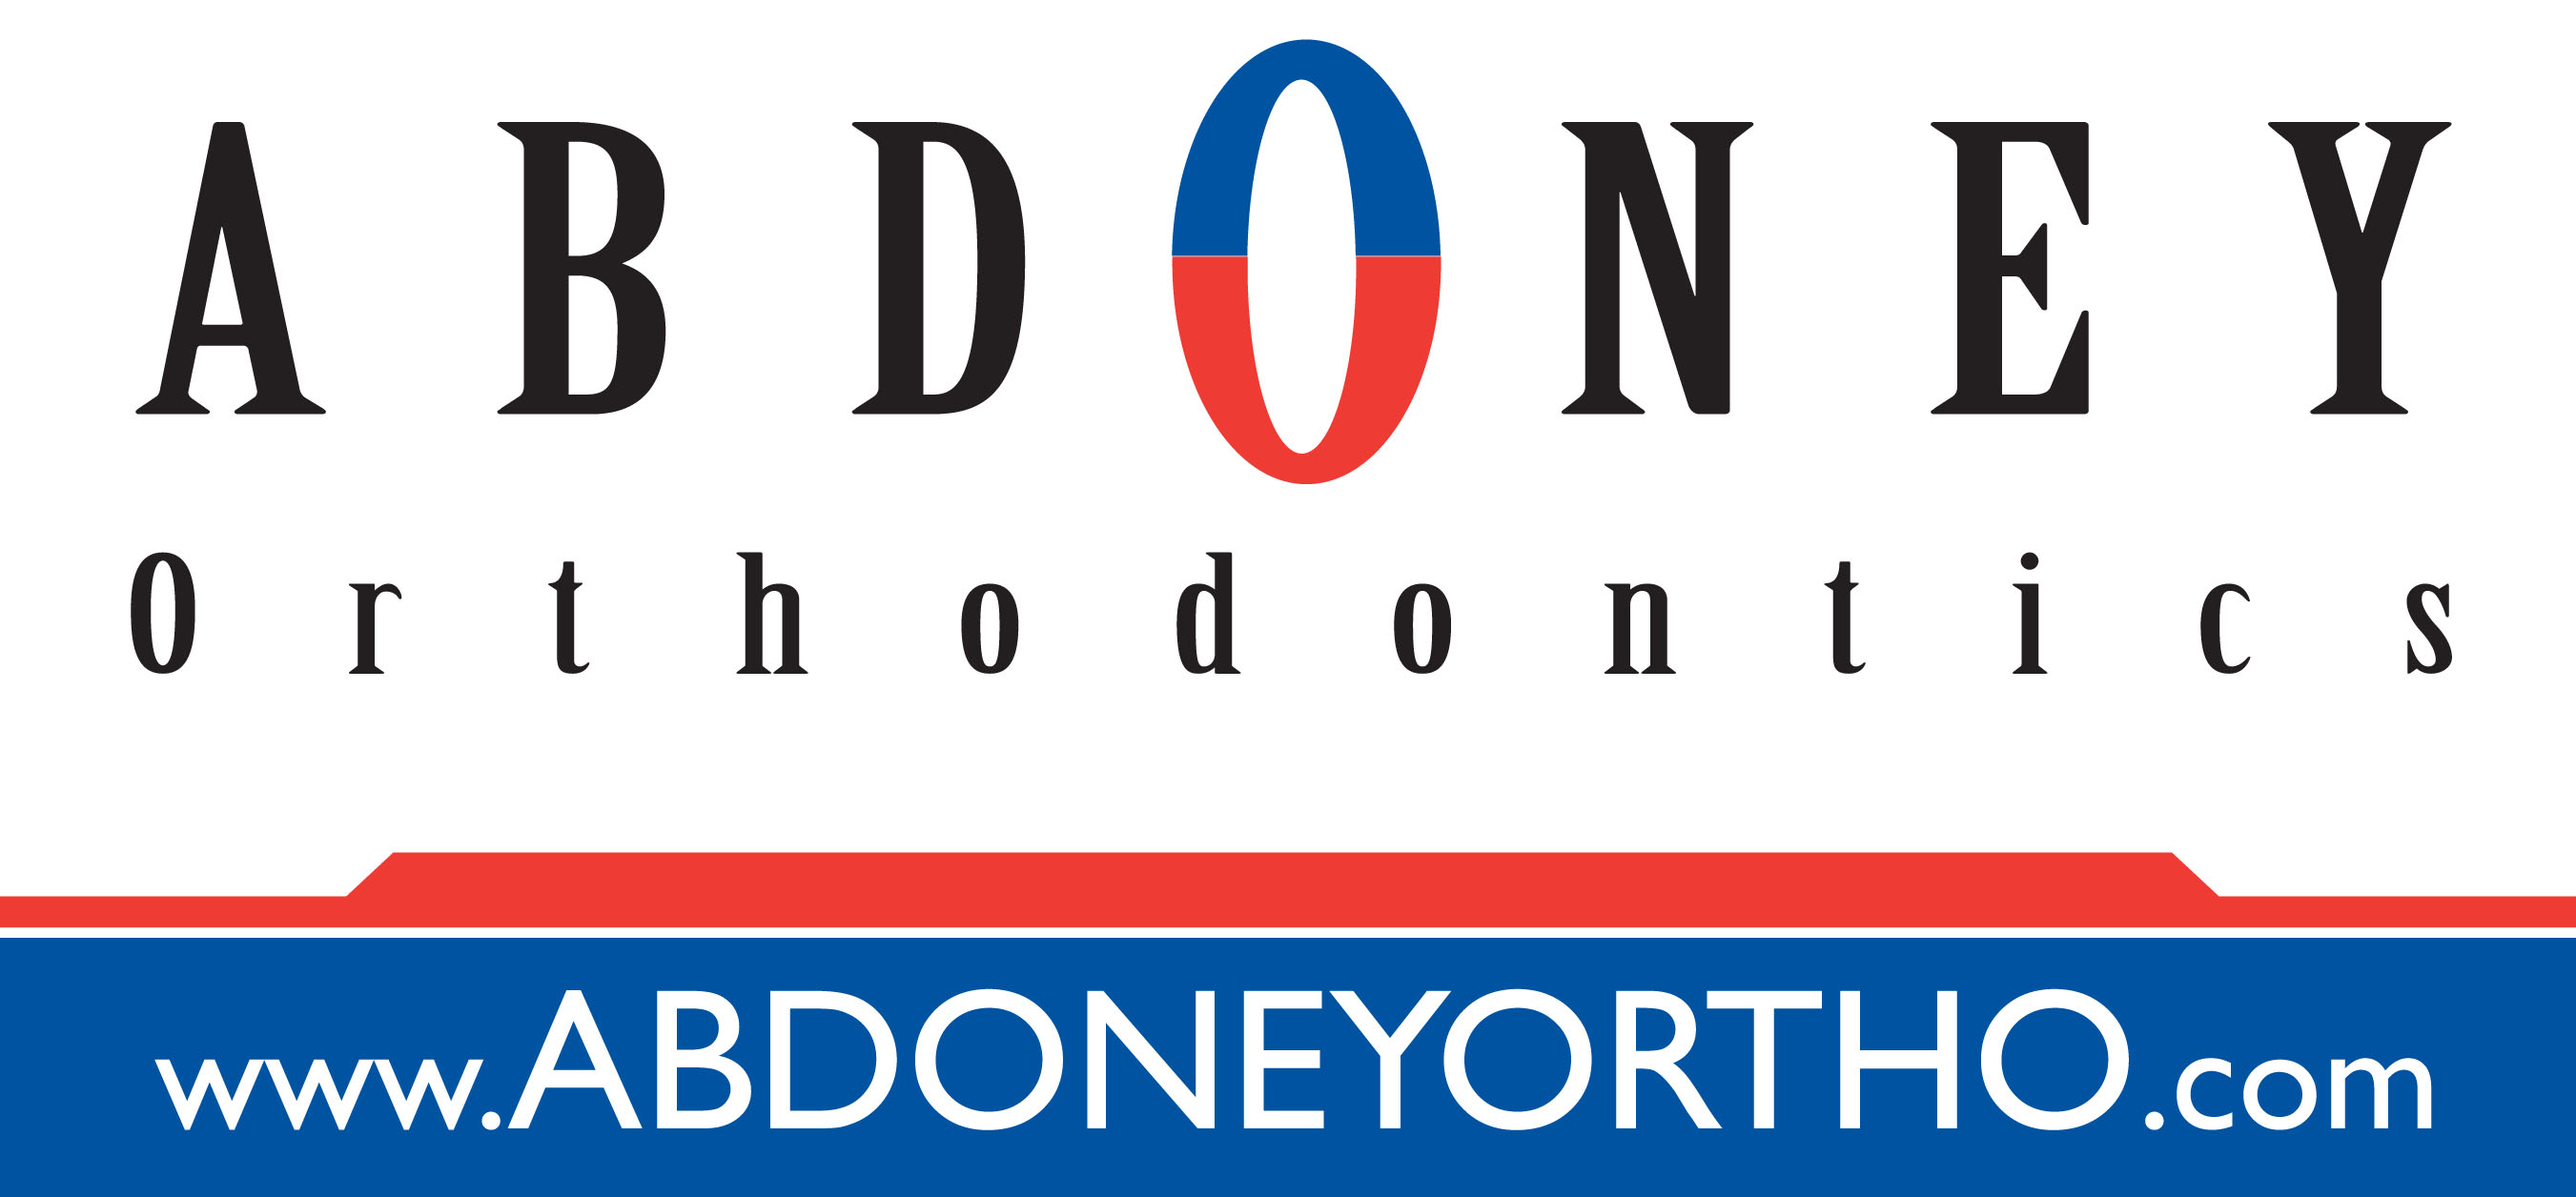 Abdoney Orthodontics